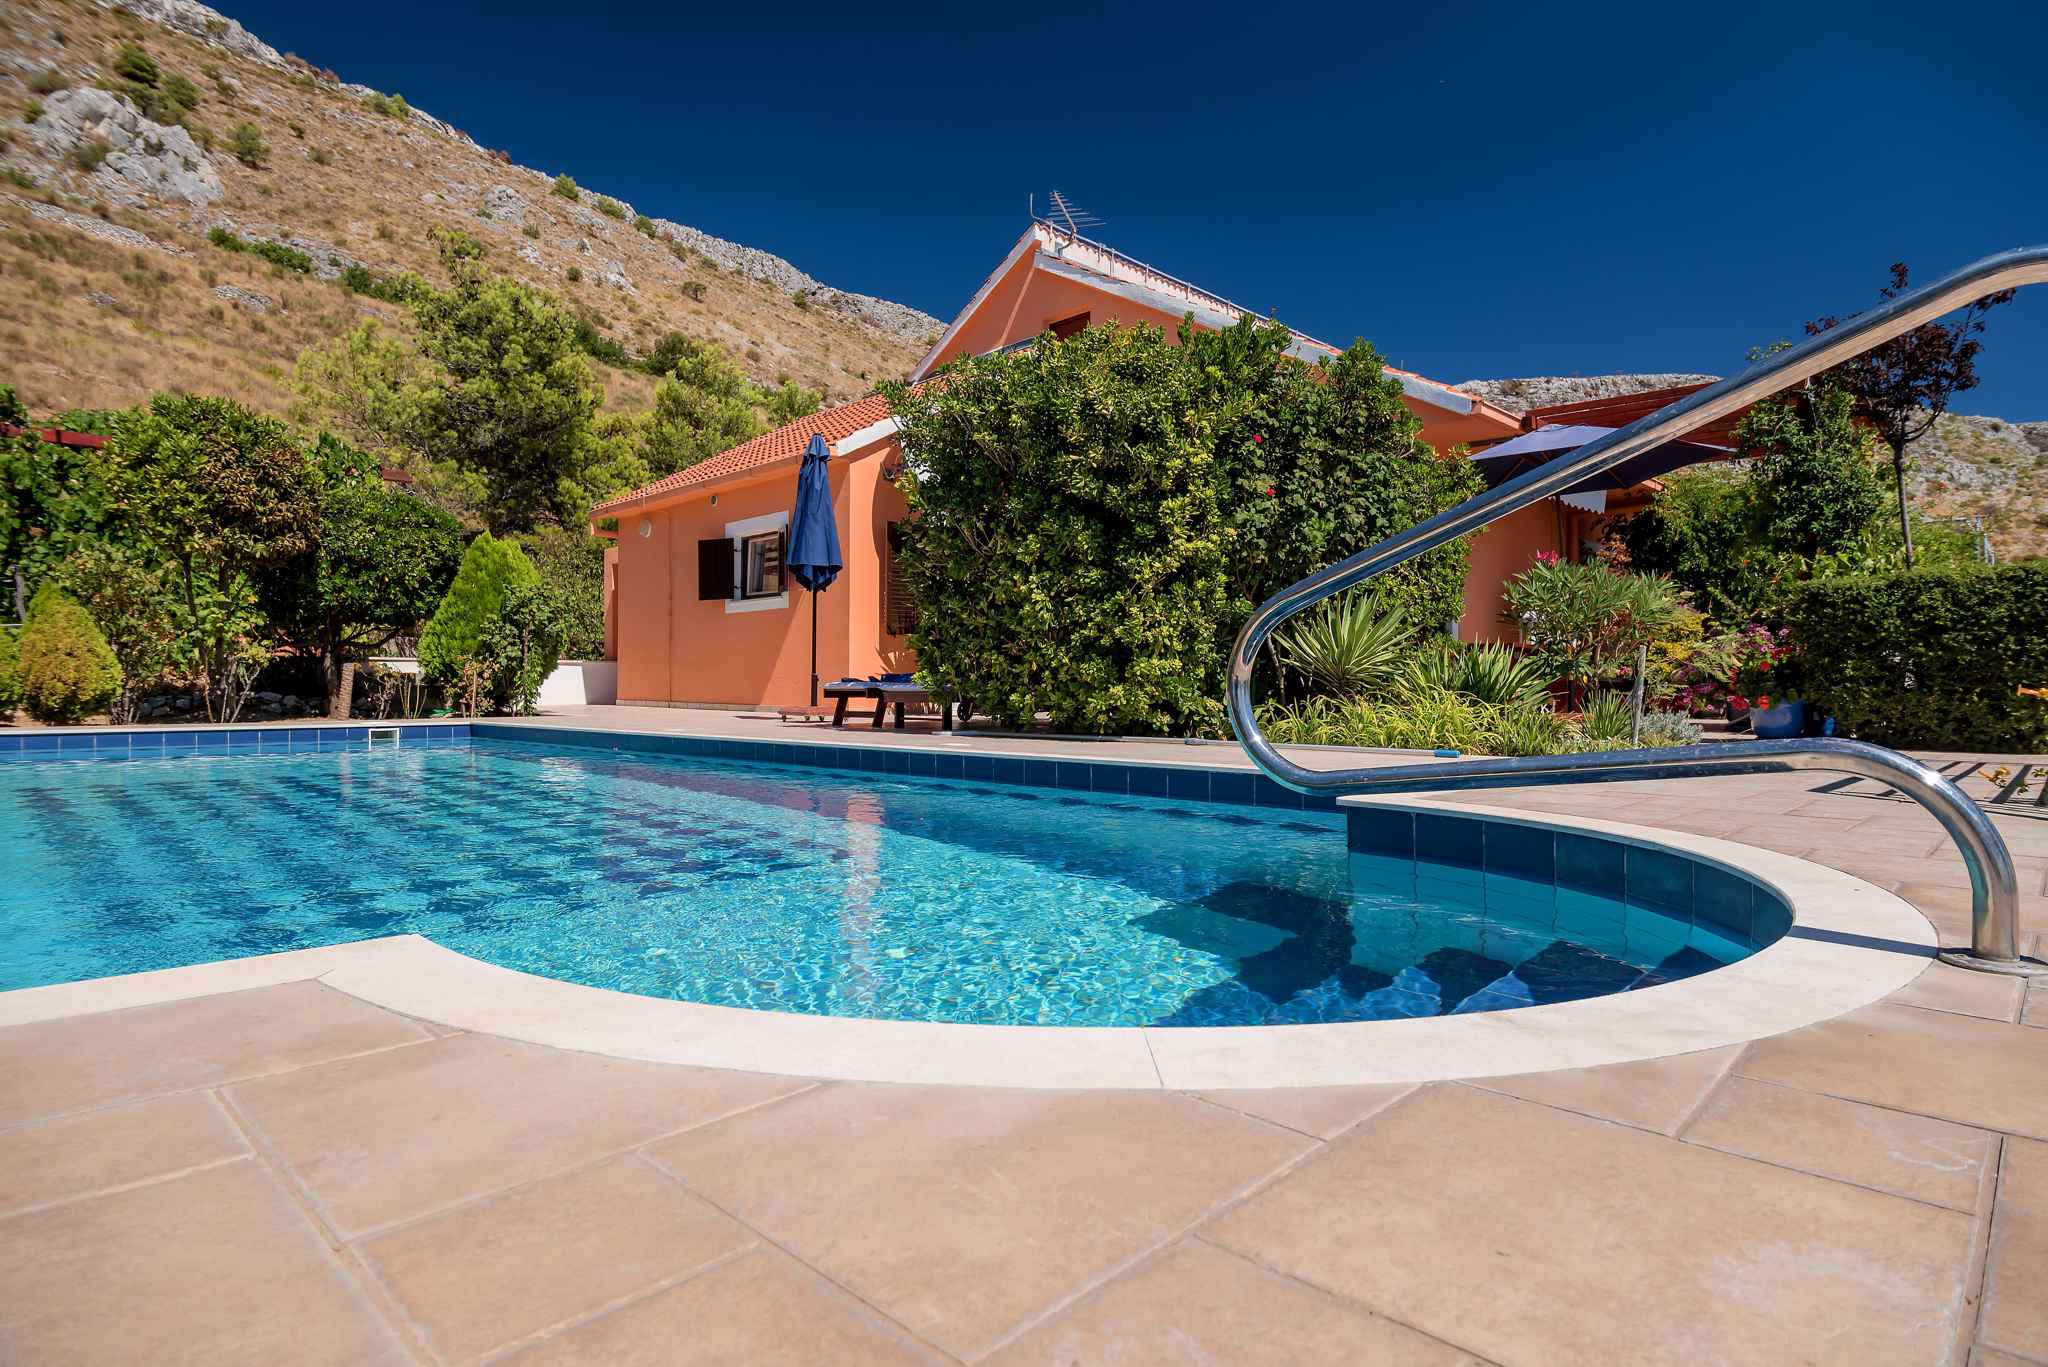 Villa mit Pool und Panorama Ferienhaus in Kroatien